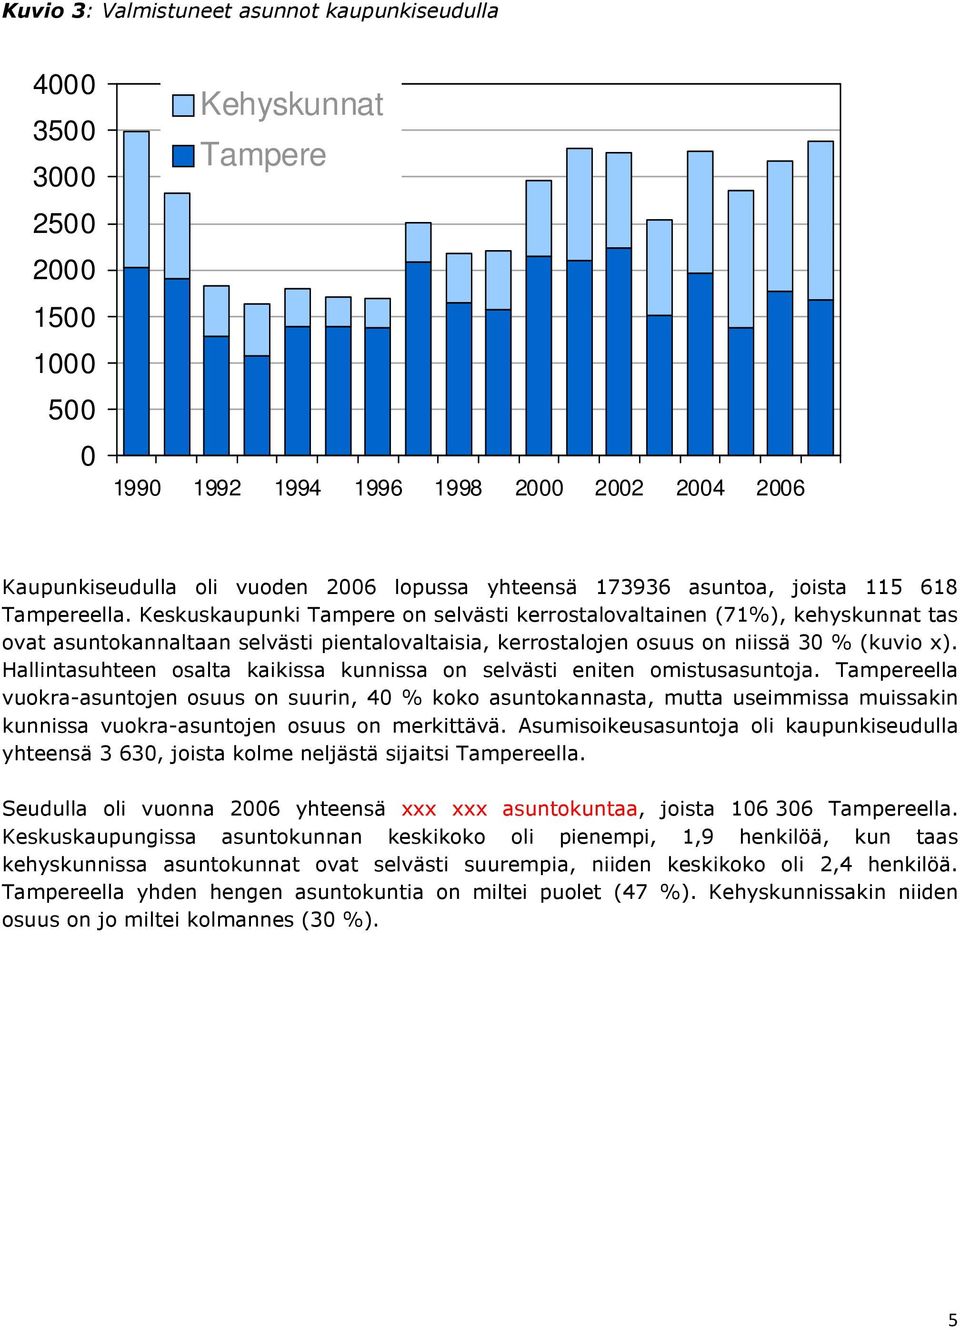 Keskuskaupunki Tampere on selvästi kerrostalovaltainen (71%), kehyskunnat tas ovat asuntokannaltaan selvästi pientalovaltaisia, kerrostalojen osuus on niissä 30 % (kuvio x).